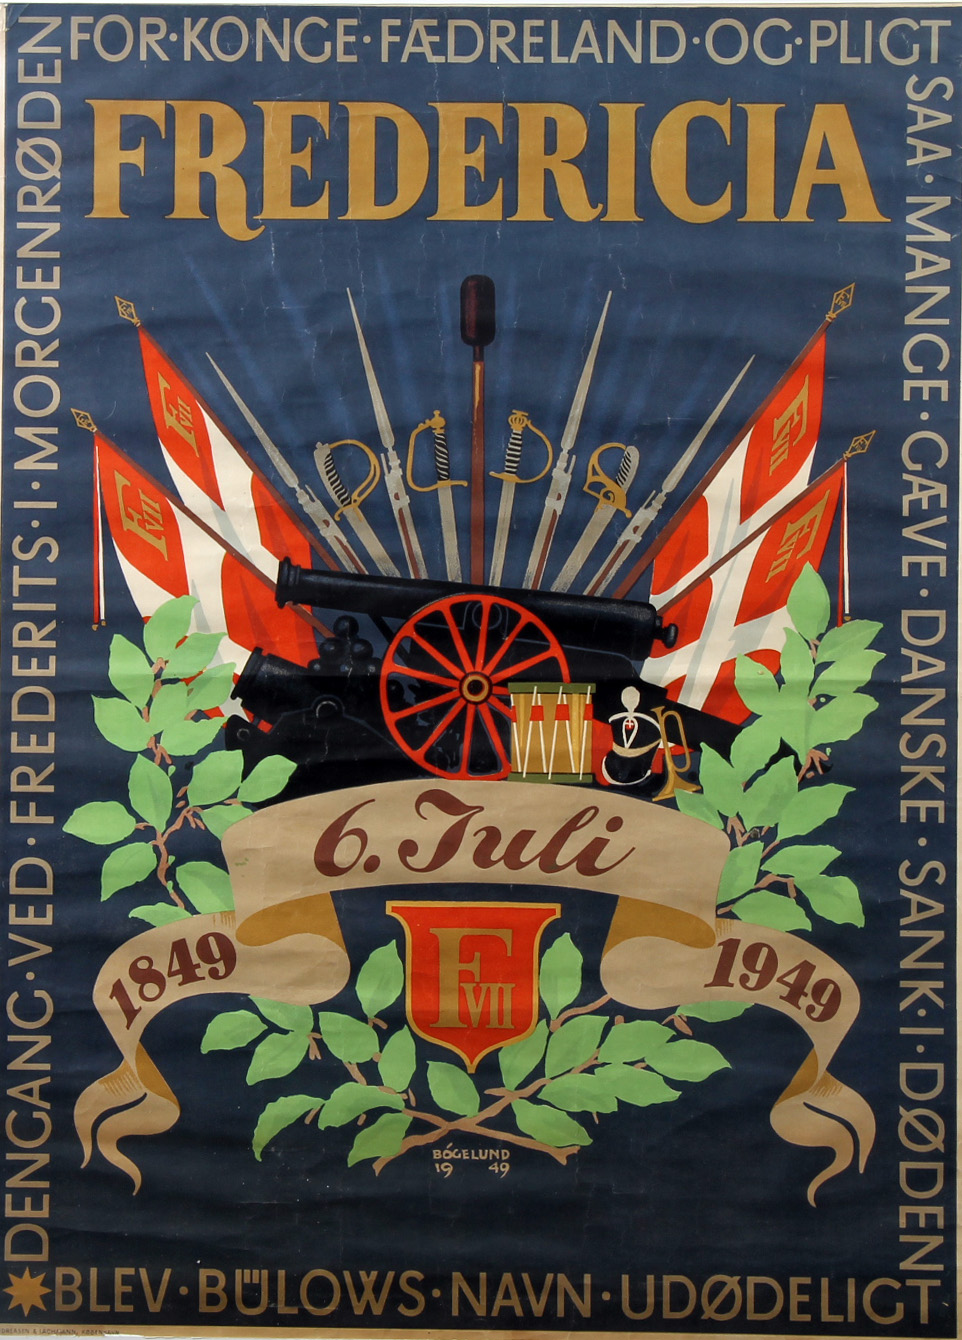 Thor Original vintage plakat 'Fredericia 1849 - 1949', litografi, 1949 | Lauritz.com